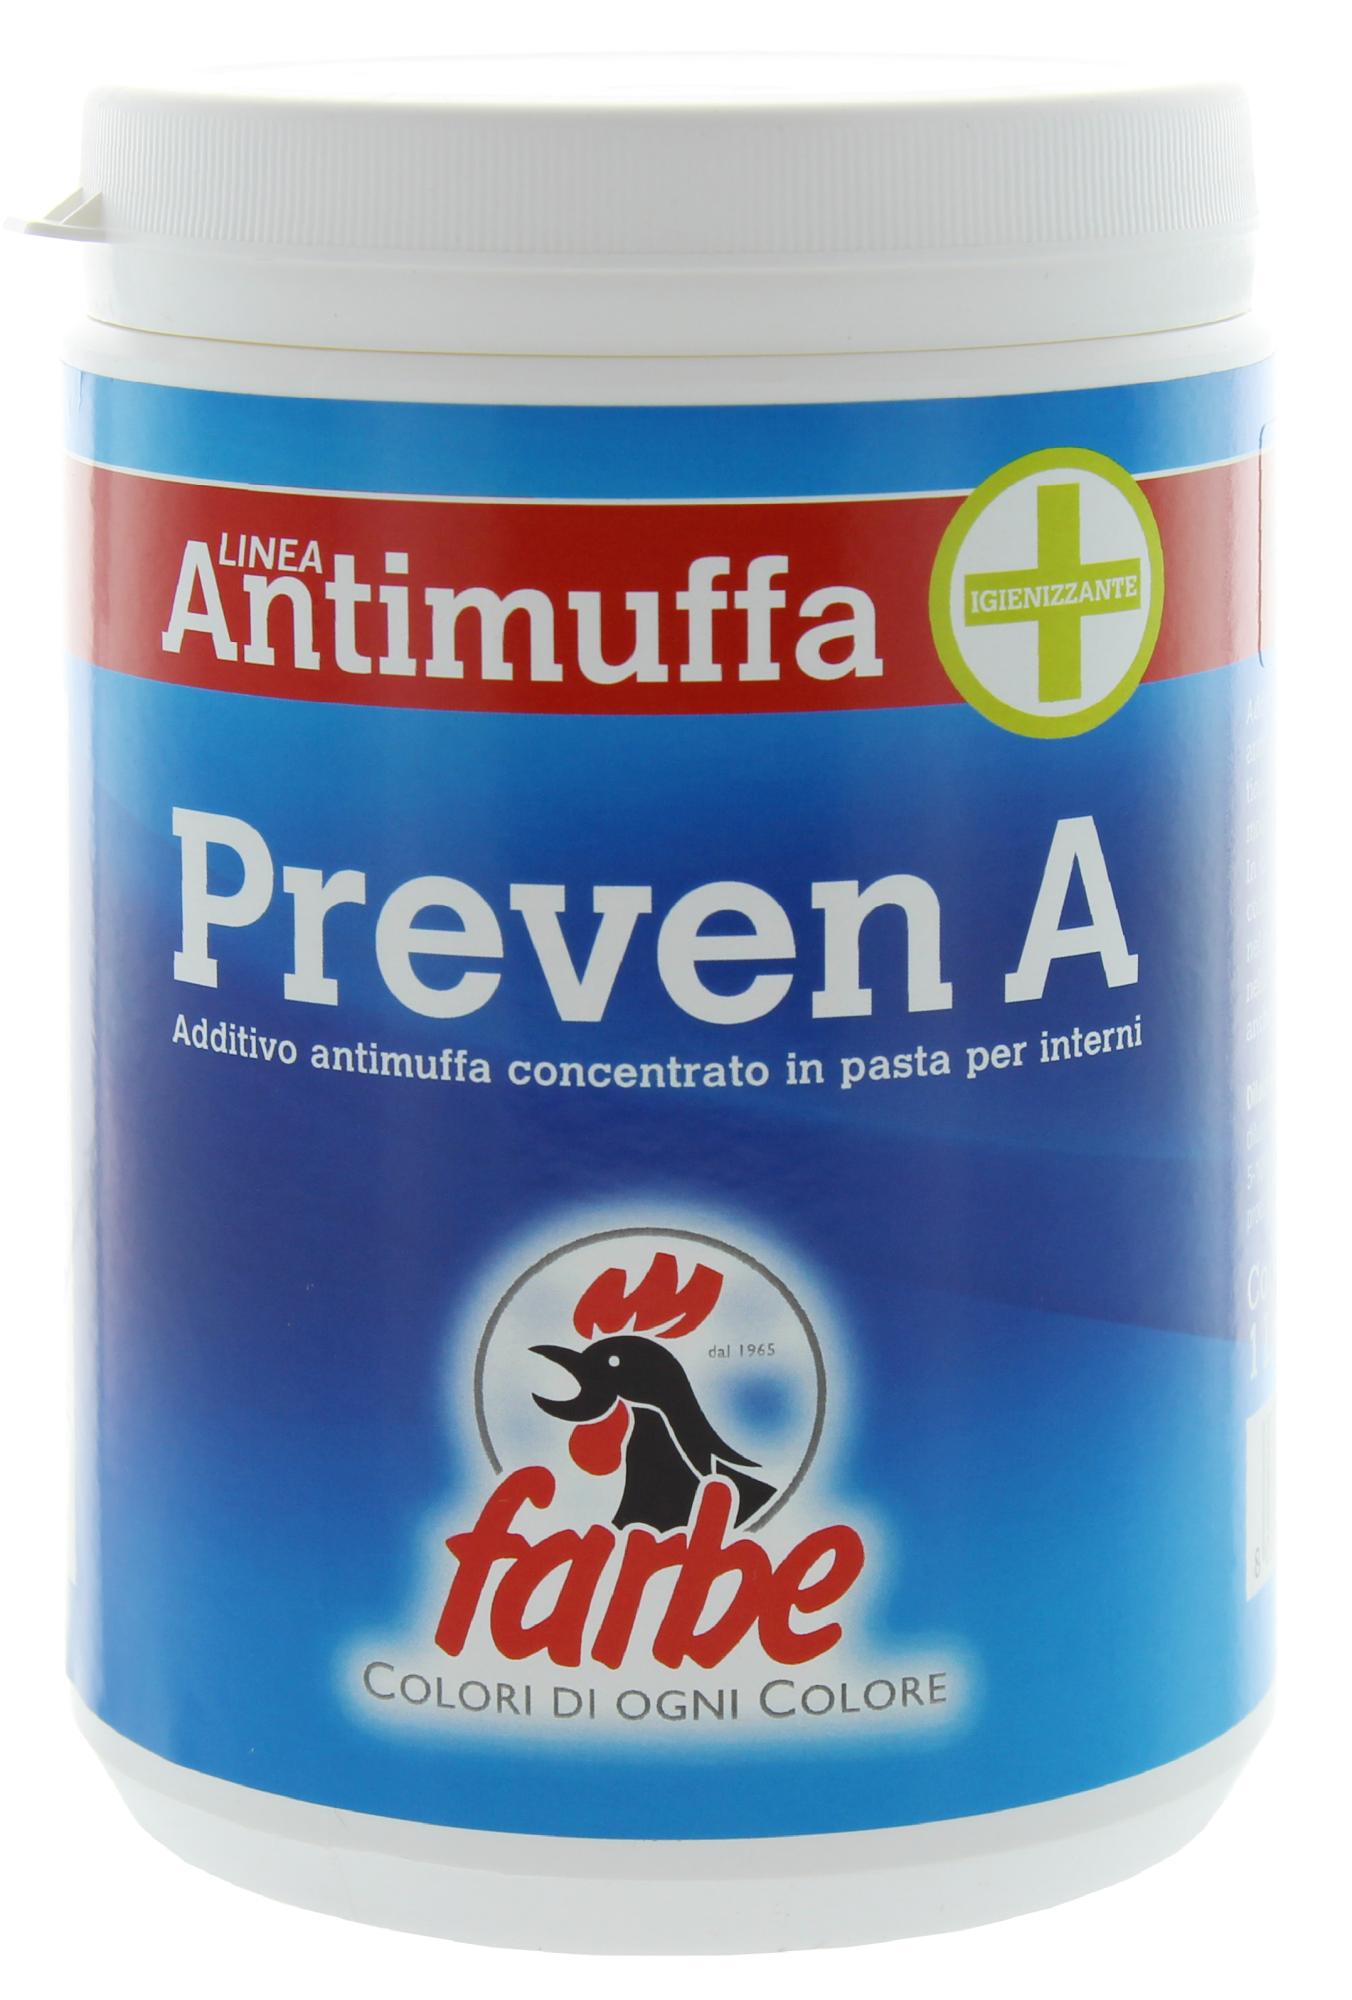 6 pz di antimuffa additivo preven/a da lt. 0.5